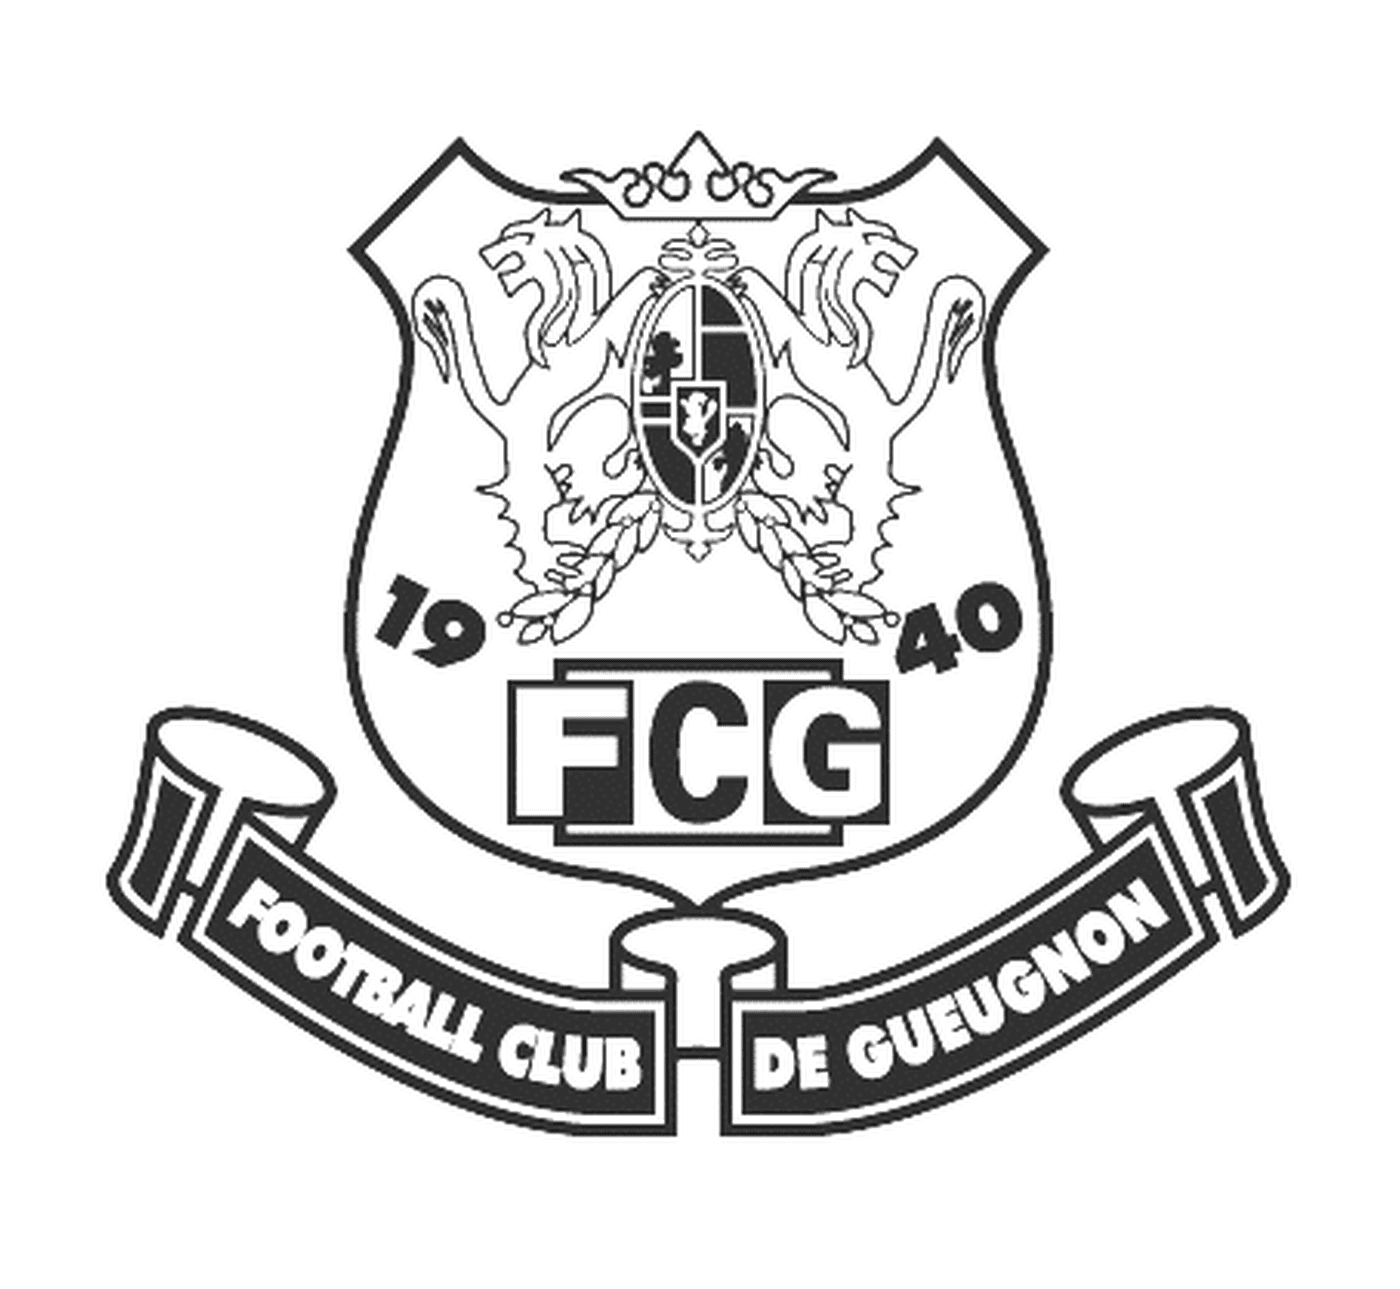  Логотип Футбольного клуба Гёньона 